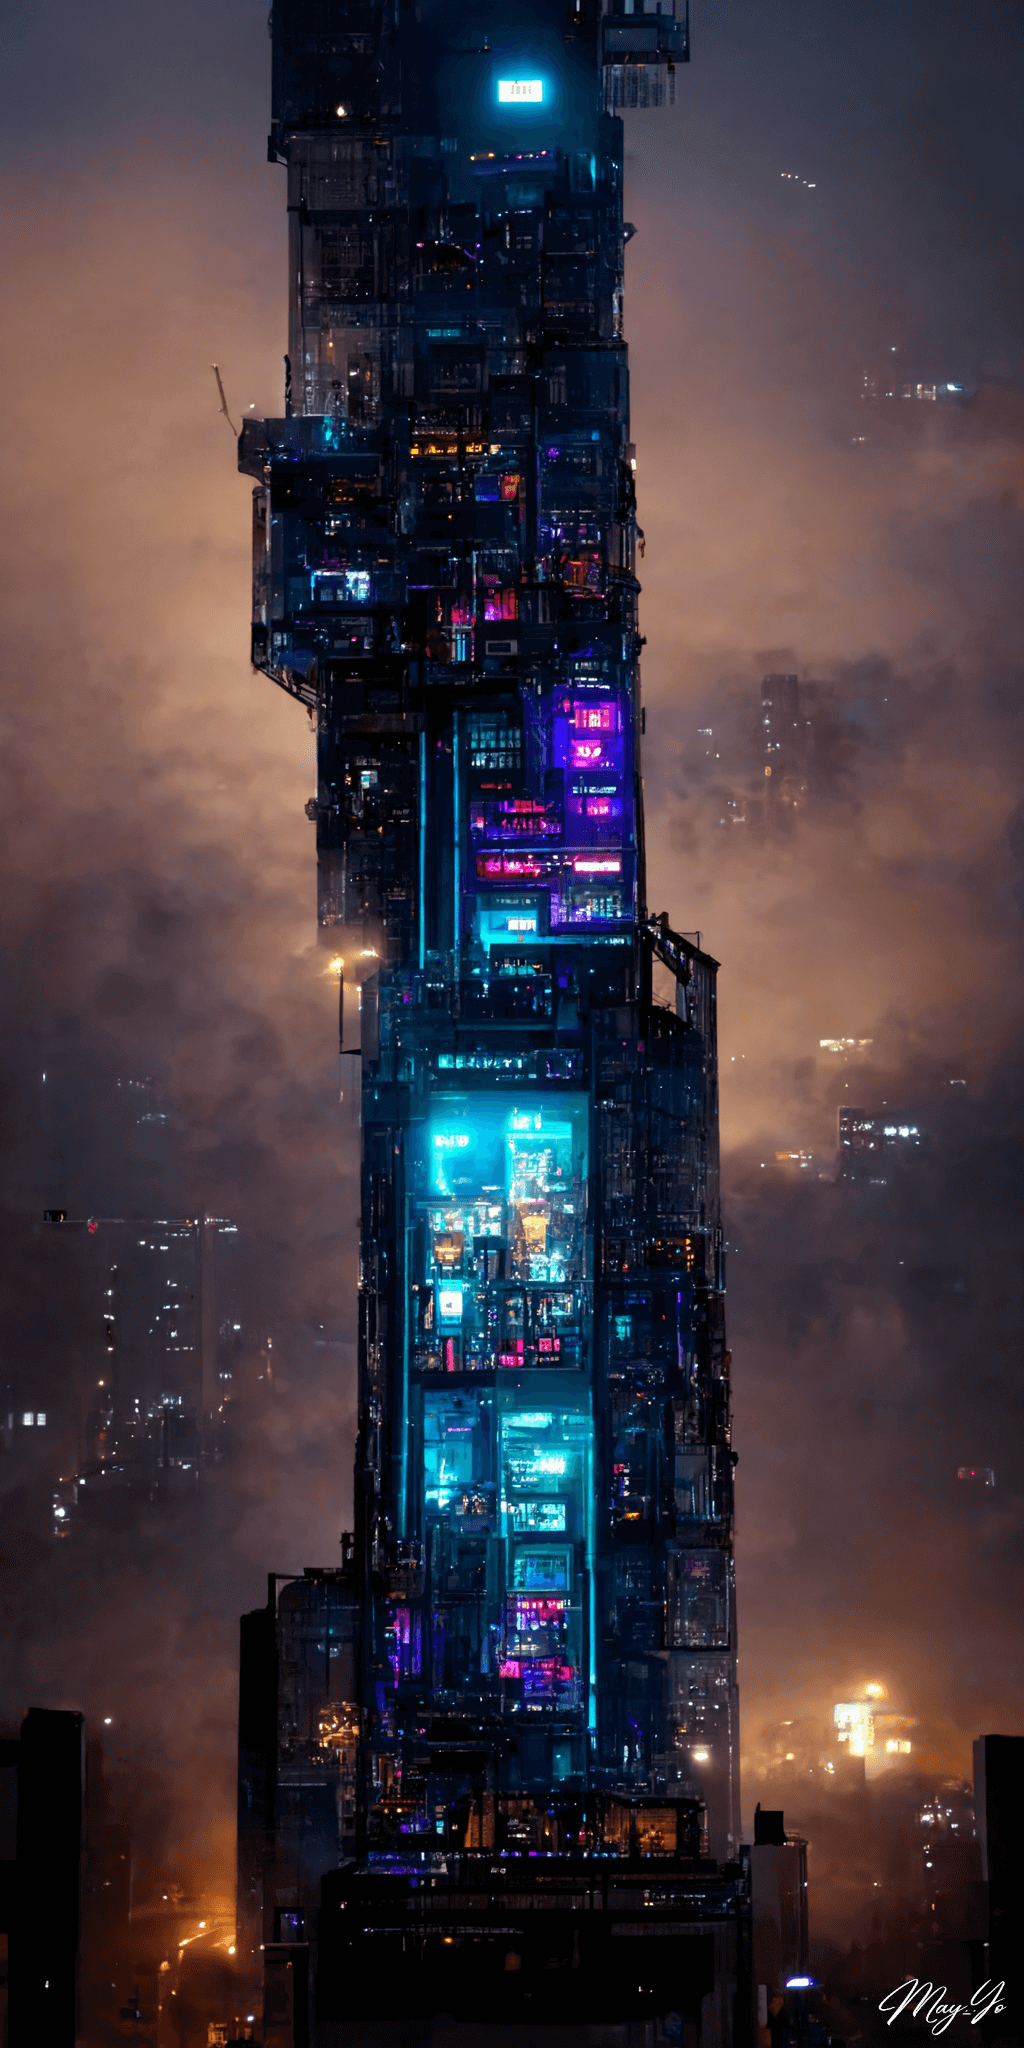 サイバーパンクな夜景に妖しく輝く近未来な高層ビルの壁紙イラスト サイバーパンクシティのビルをイメージした待受 AIイラスト待受 縦長画像 cyberpunk skyscraper illustration neon building